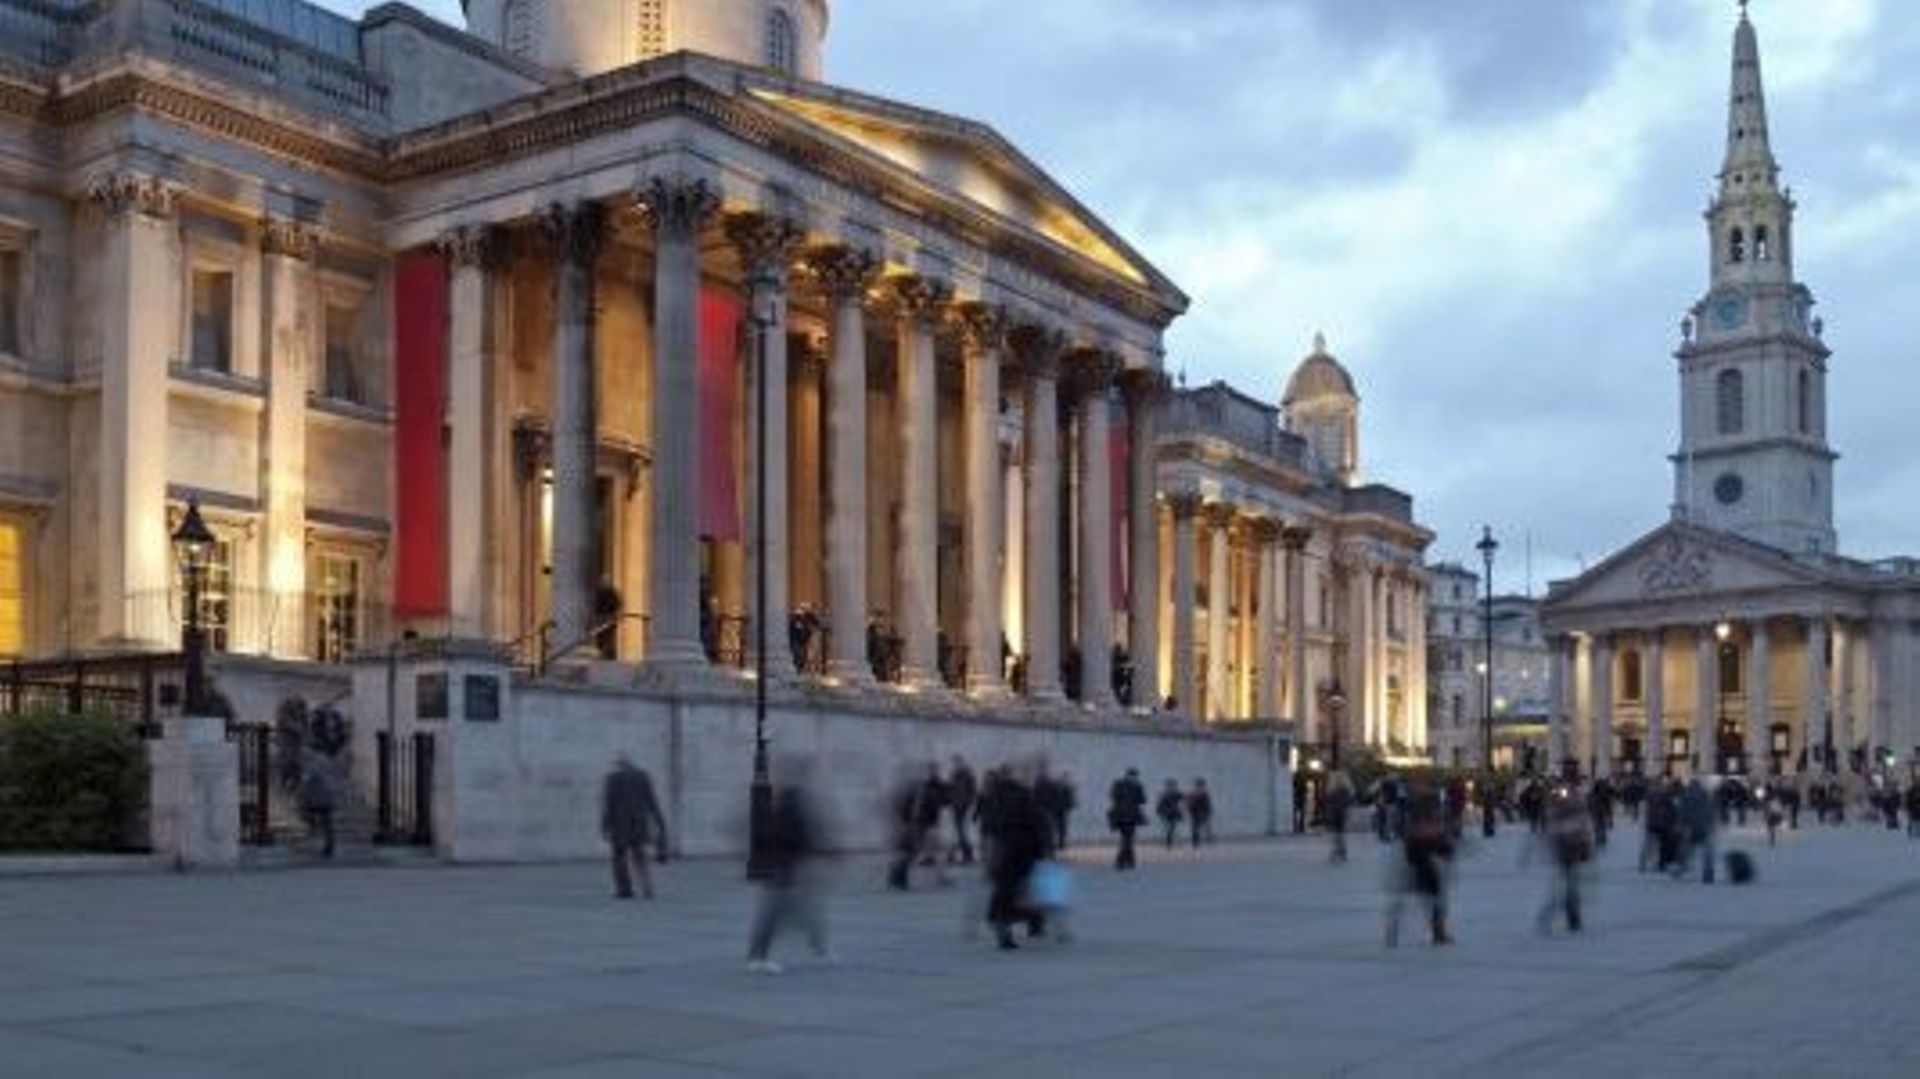 De nombreux musées britanniques pourraient être contraints de changer leurs horaires d'ouverture, voire de fermer momentanément, en réaction à l'inflation.